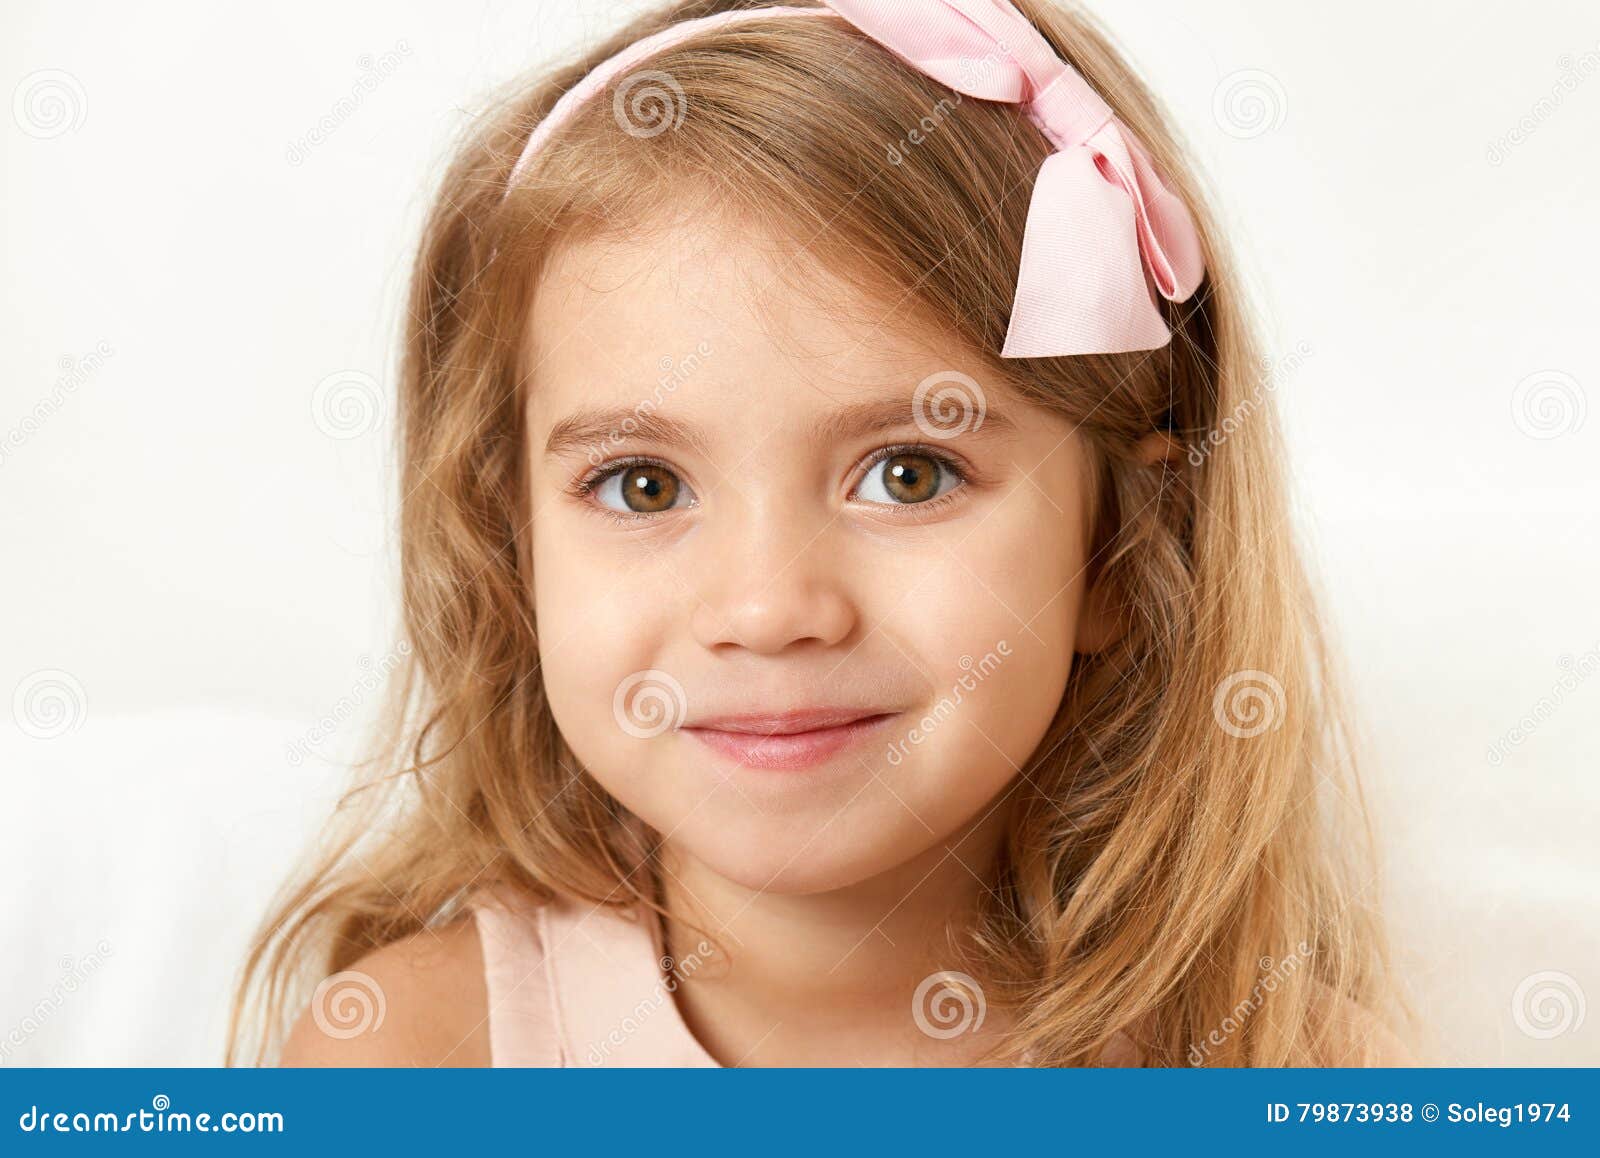 adorable little child girl face closeup portrait